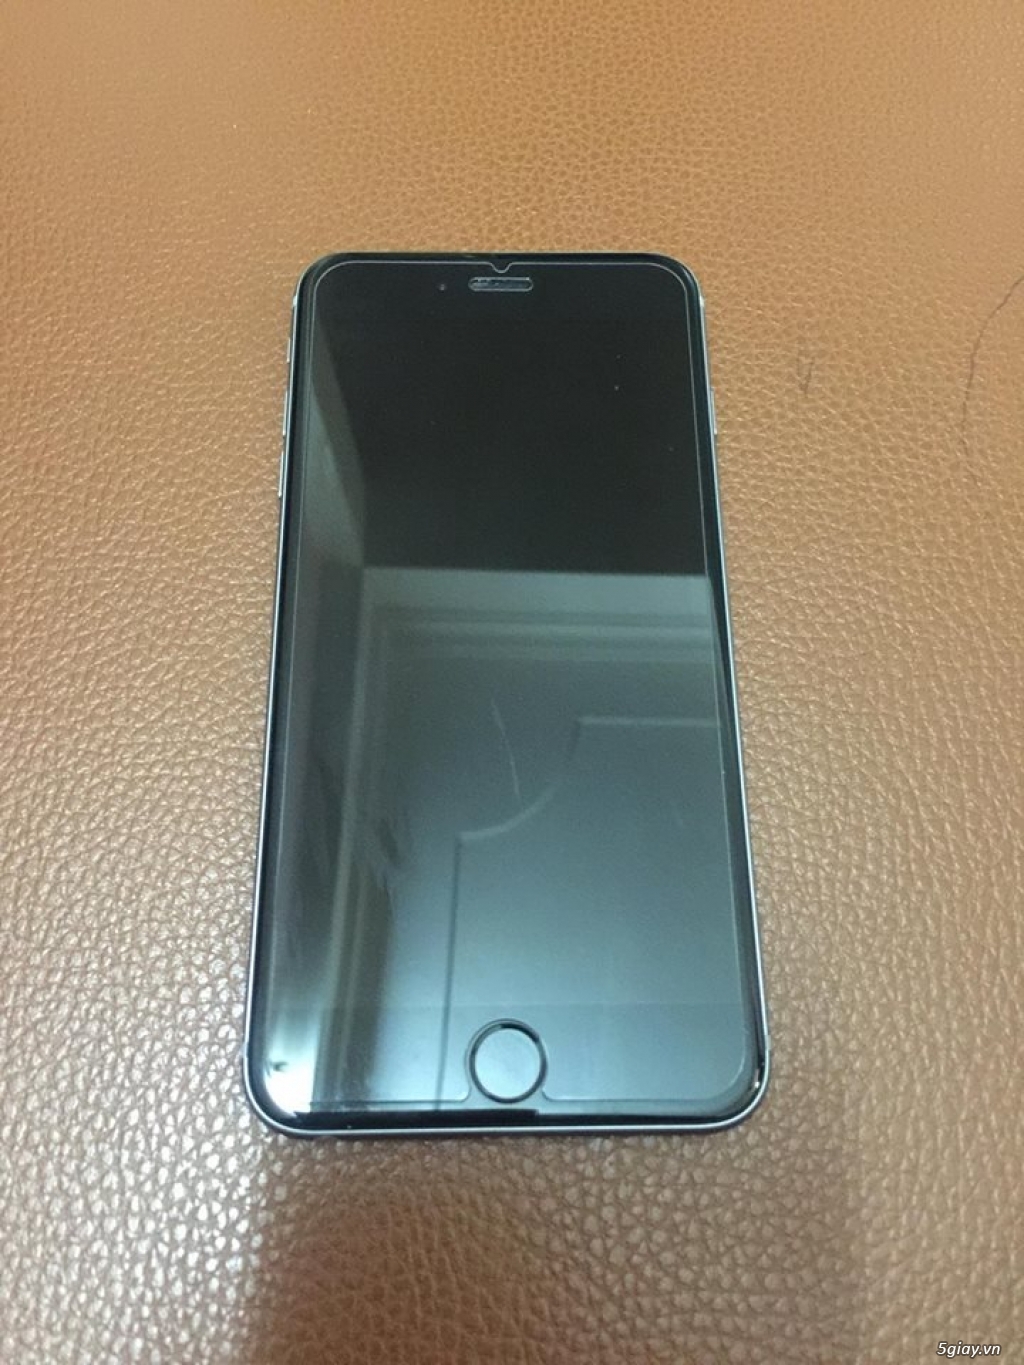 iPhone 6plus 64gb bán lẻ chất lượng như bán sỉ - 1